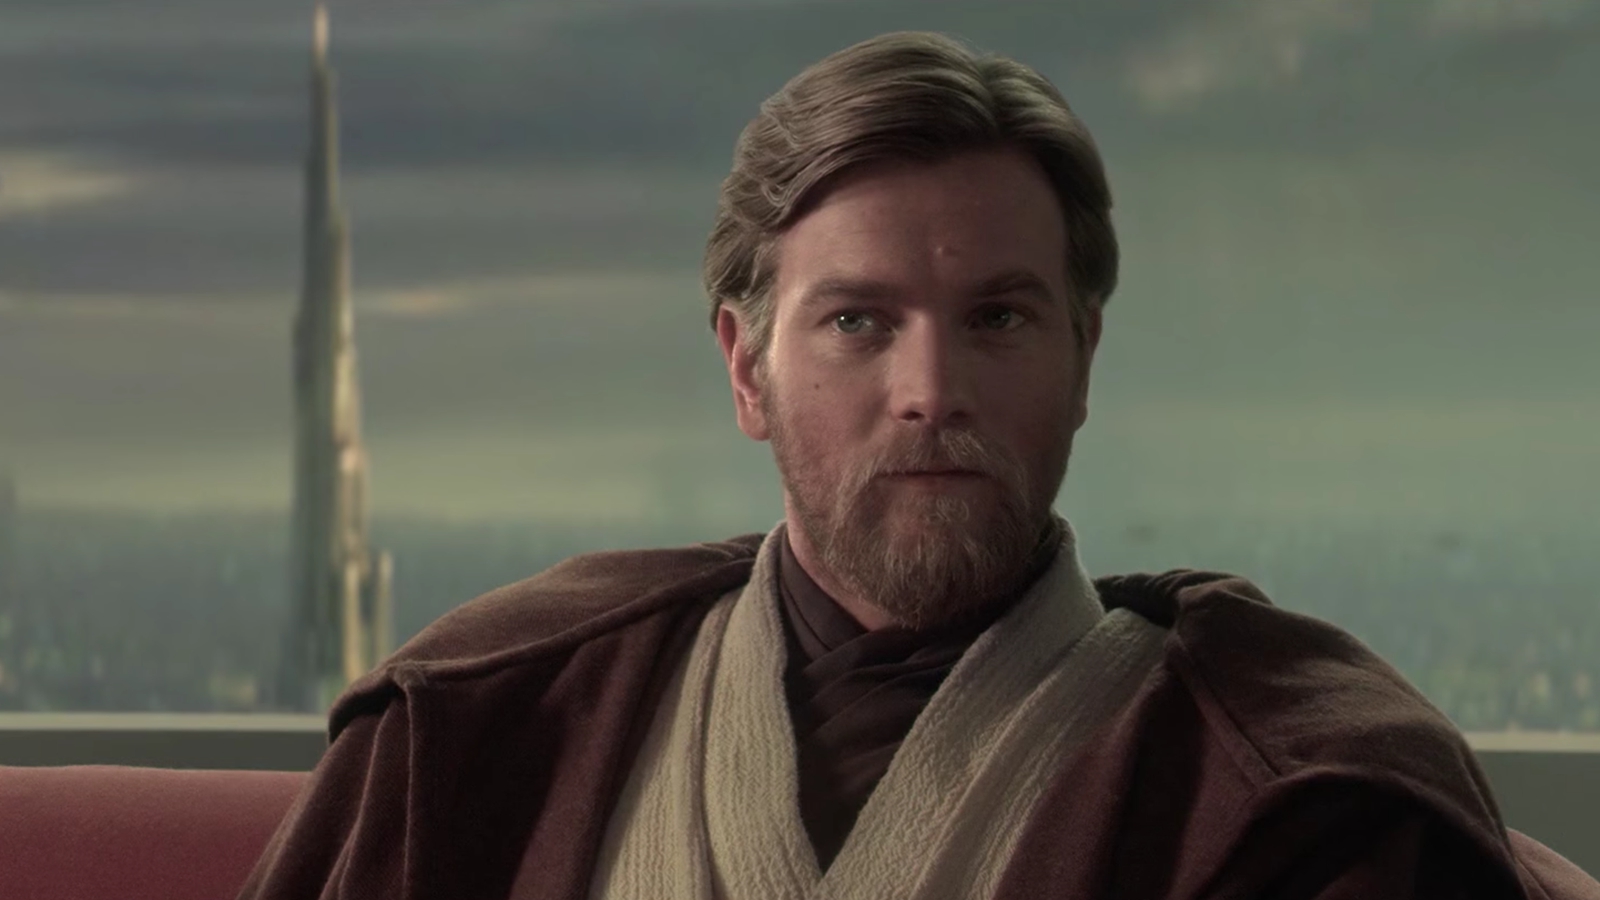 Obi-Wan Kenobi: Ewan McGregor non sa ancora nulla del futuro del personaggio nei progetti di Star Wars